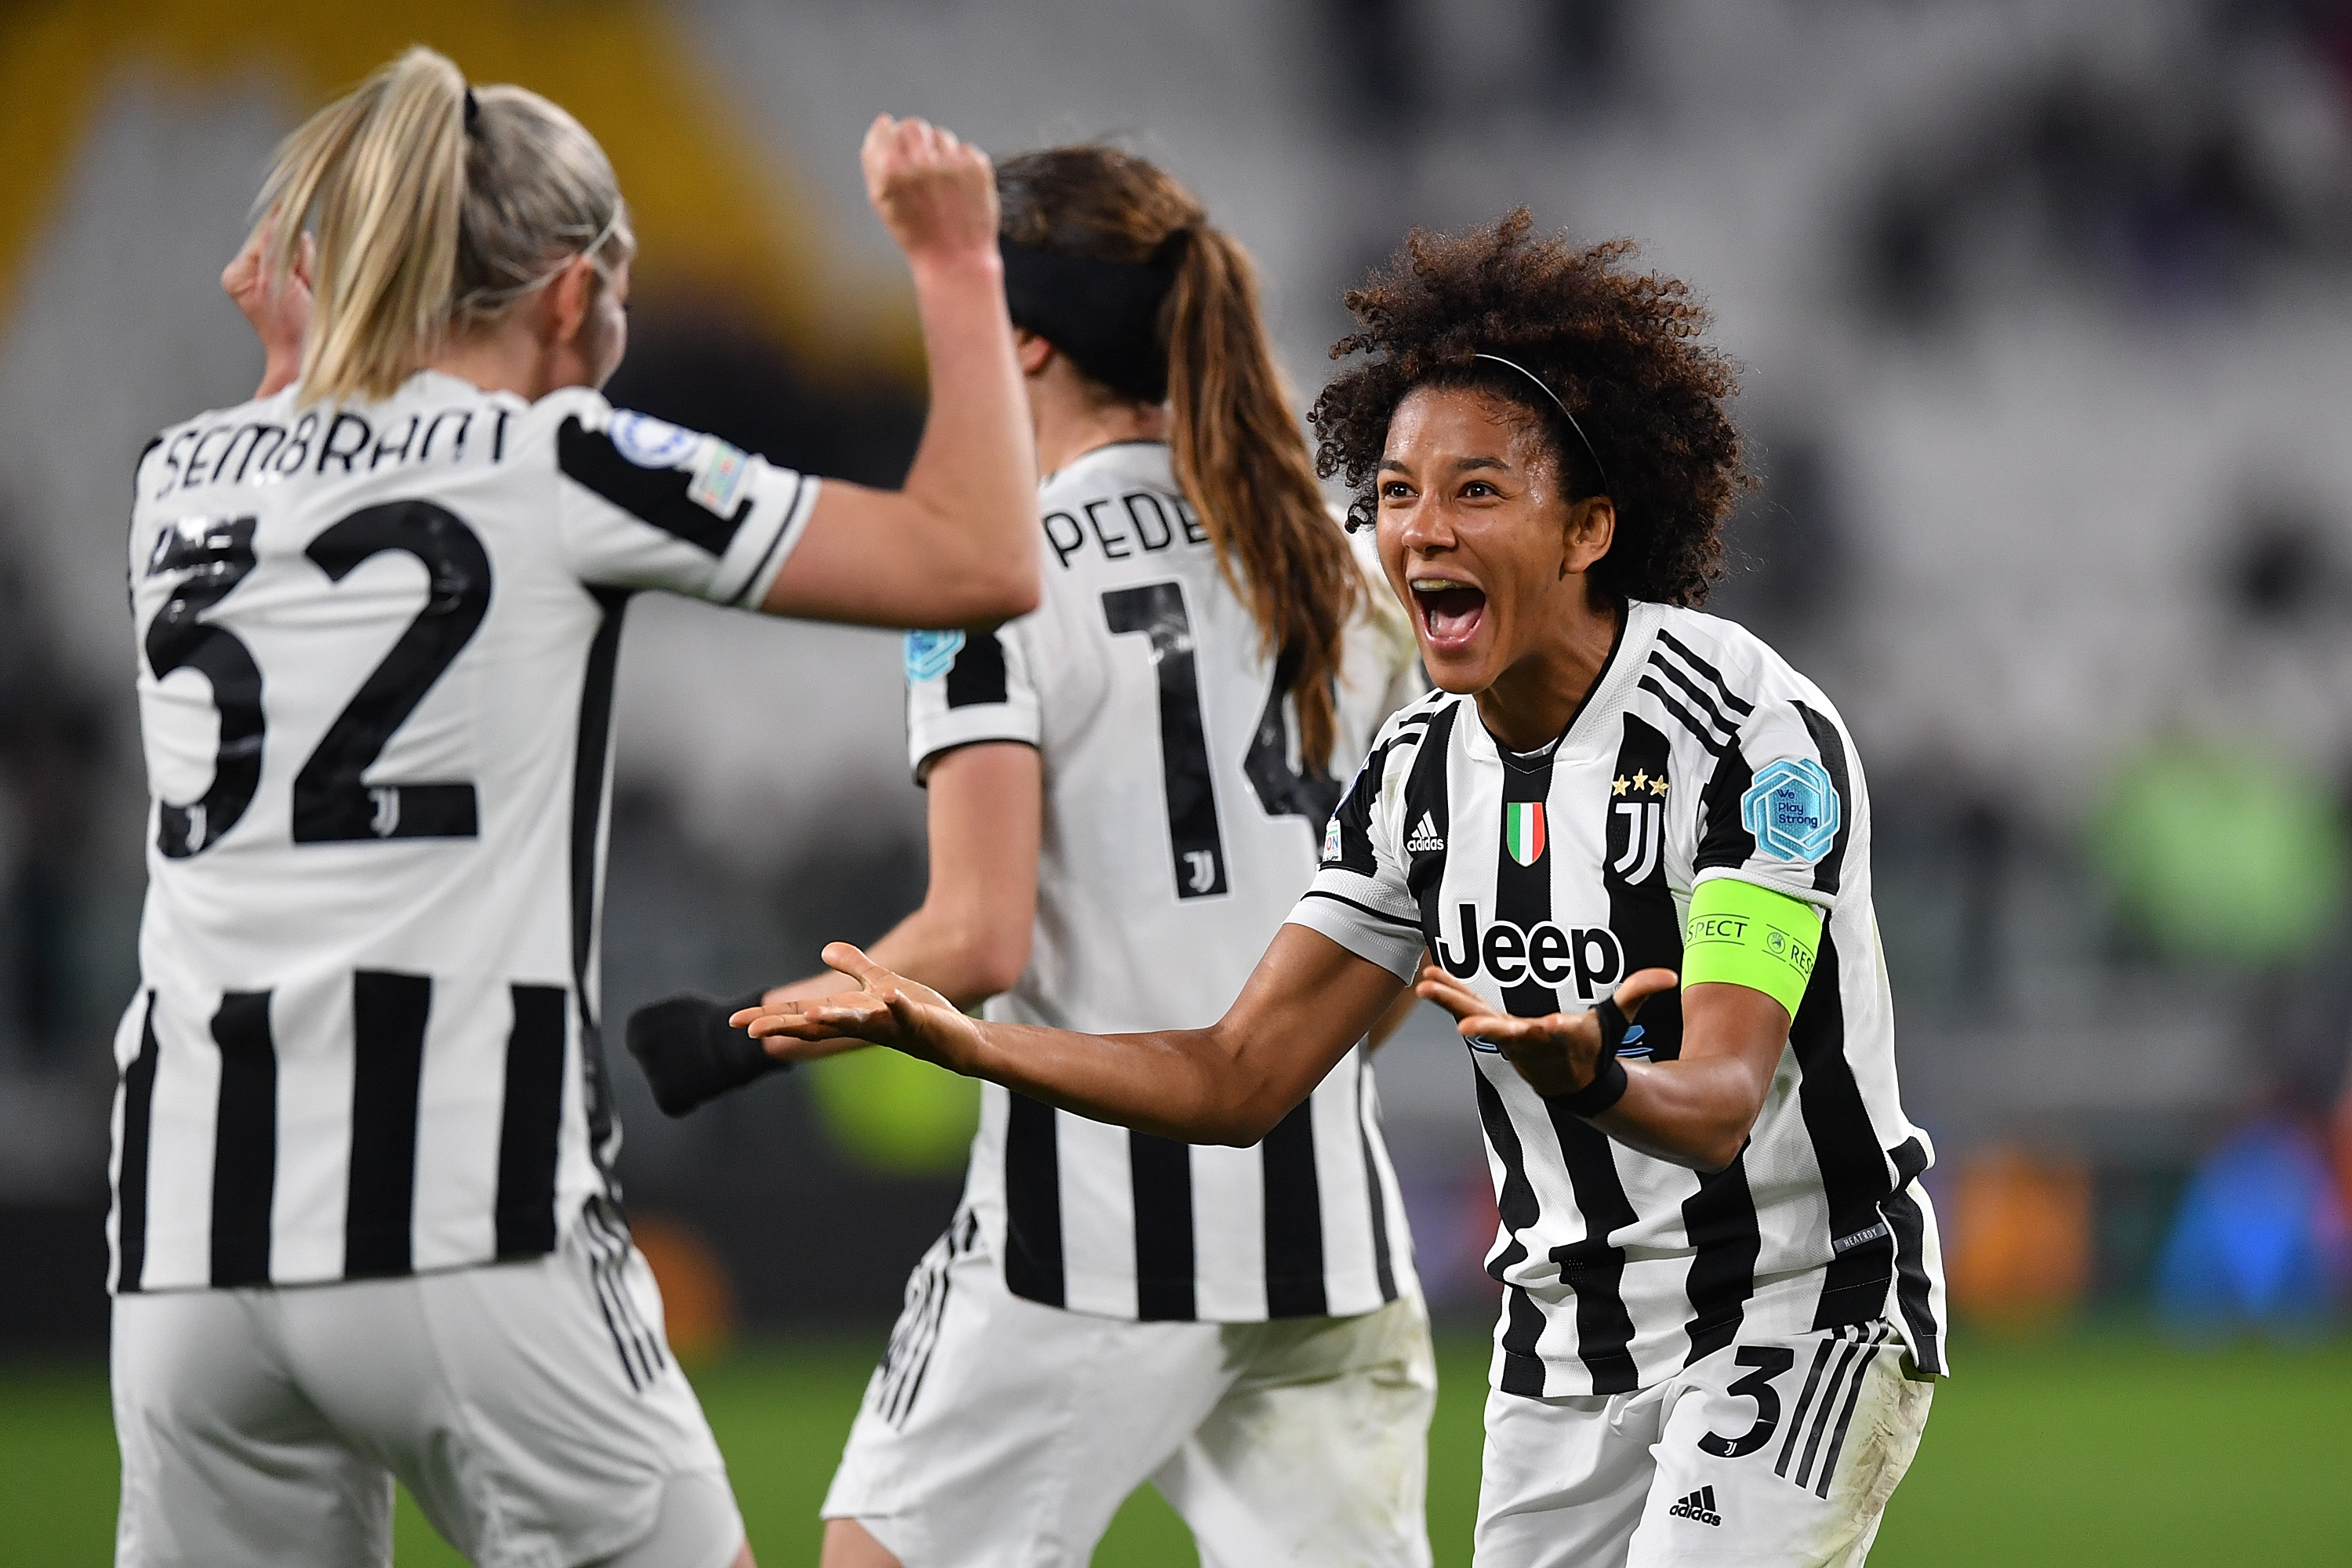 La Serie A femminile alla fine sarà a pieno titolo professionistica